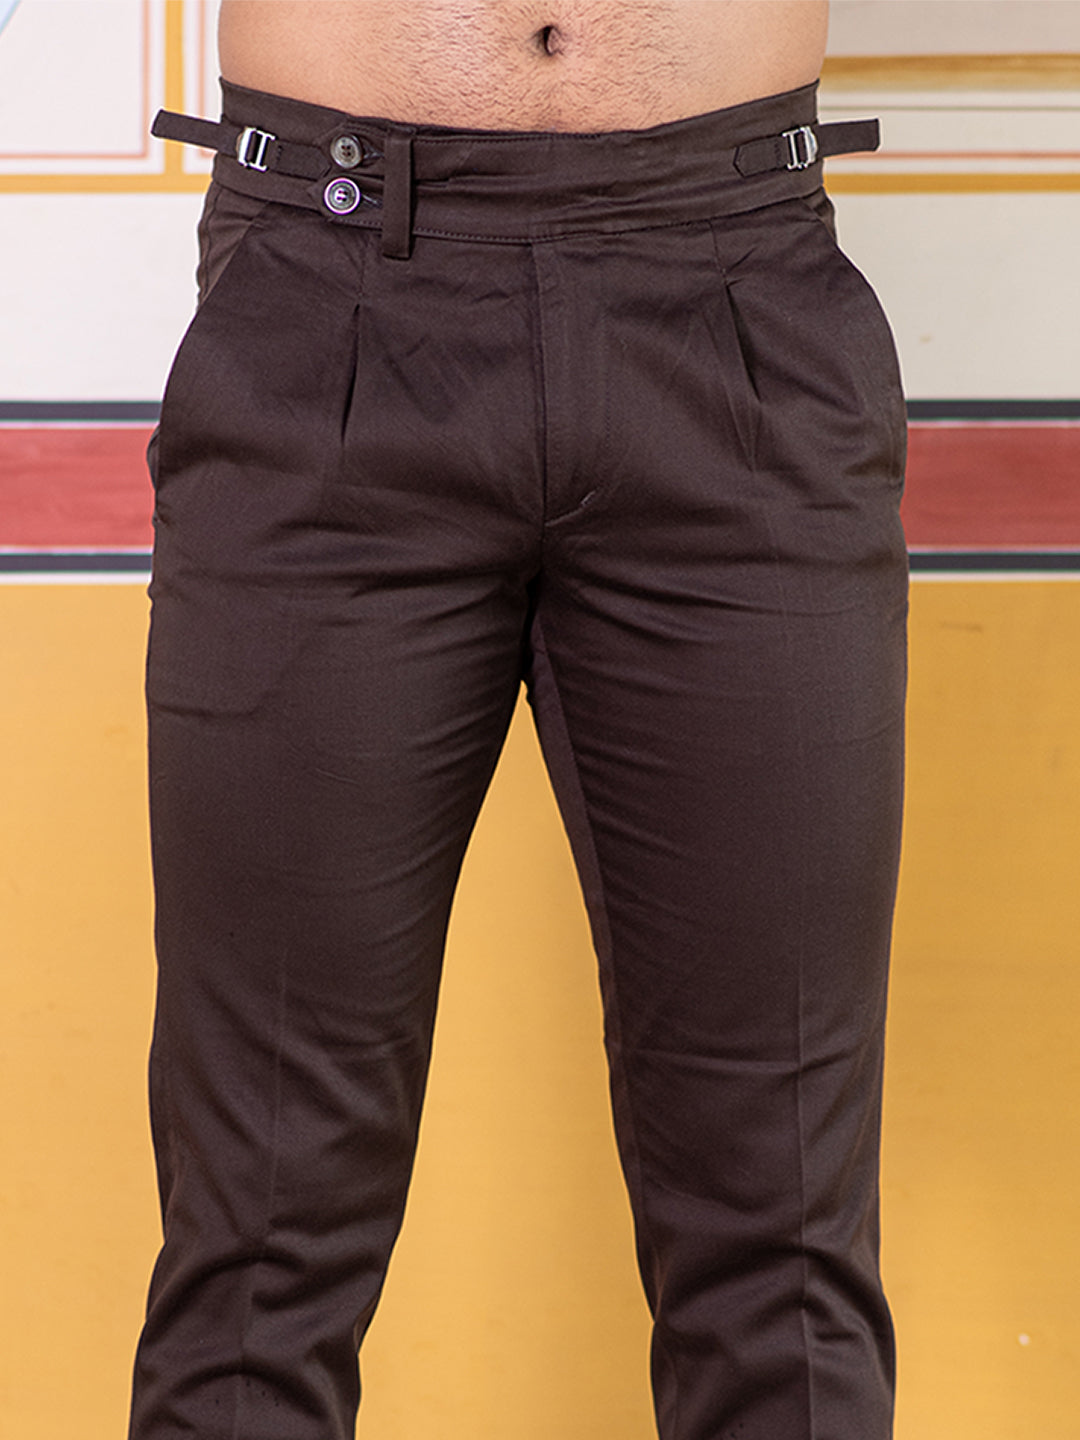 Shaibo saree Regular Fit Men Multicolor Trousers - Buy Shaibo saree Regular  Fit Men Multicolor Trousers Online at Best Prices in India | Flipkart.com